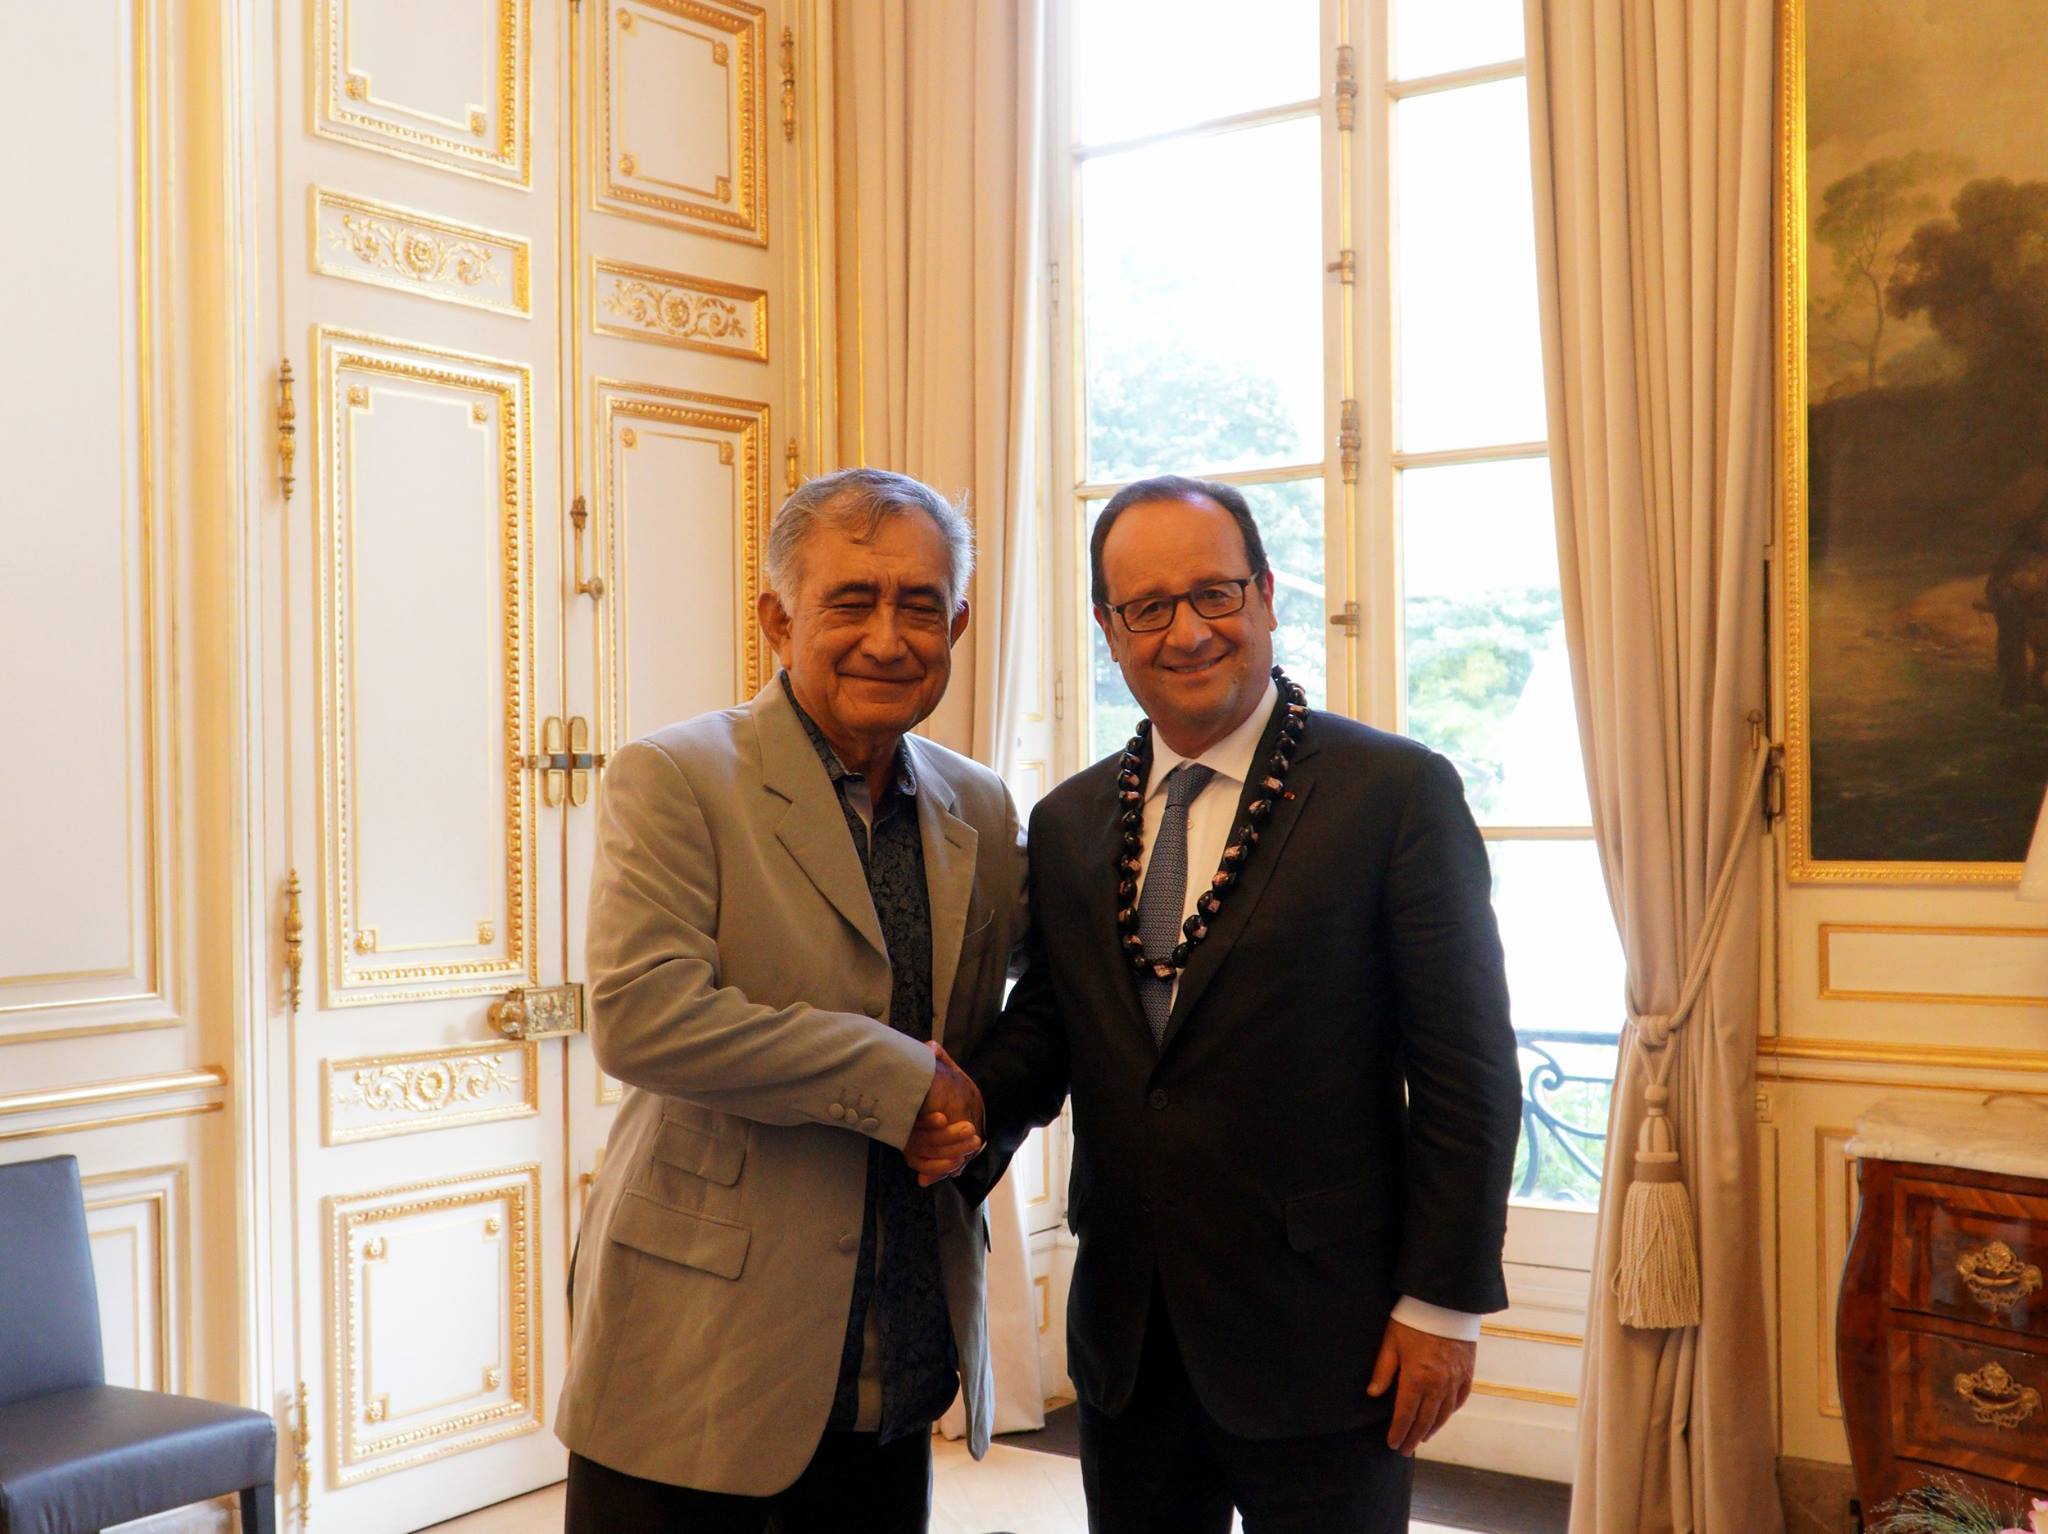 Le leader indépendantiste polynésien a été reçu par le président de la République jeudi en fin d’après-midi, au Palais de l’Elysée à Paris.